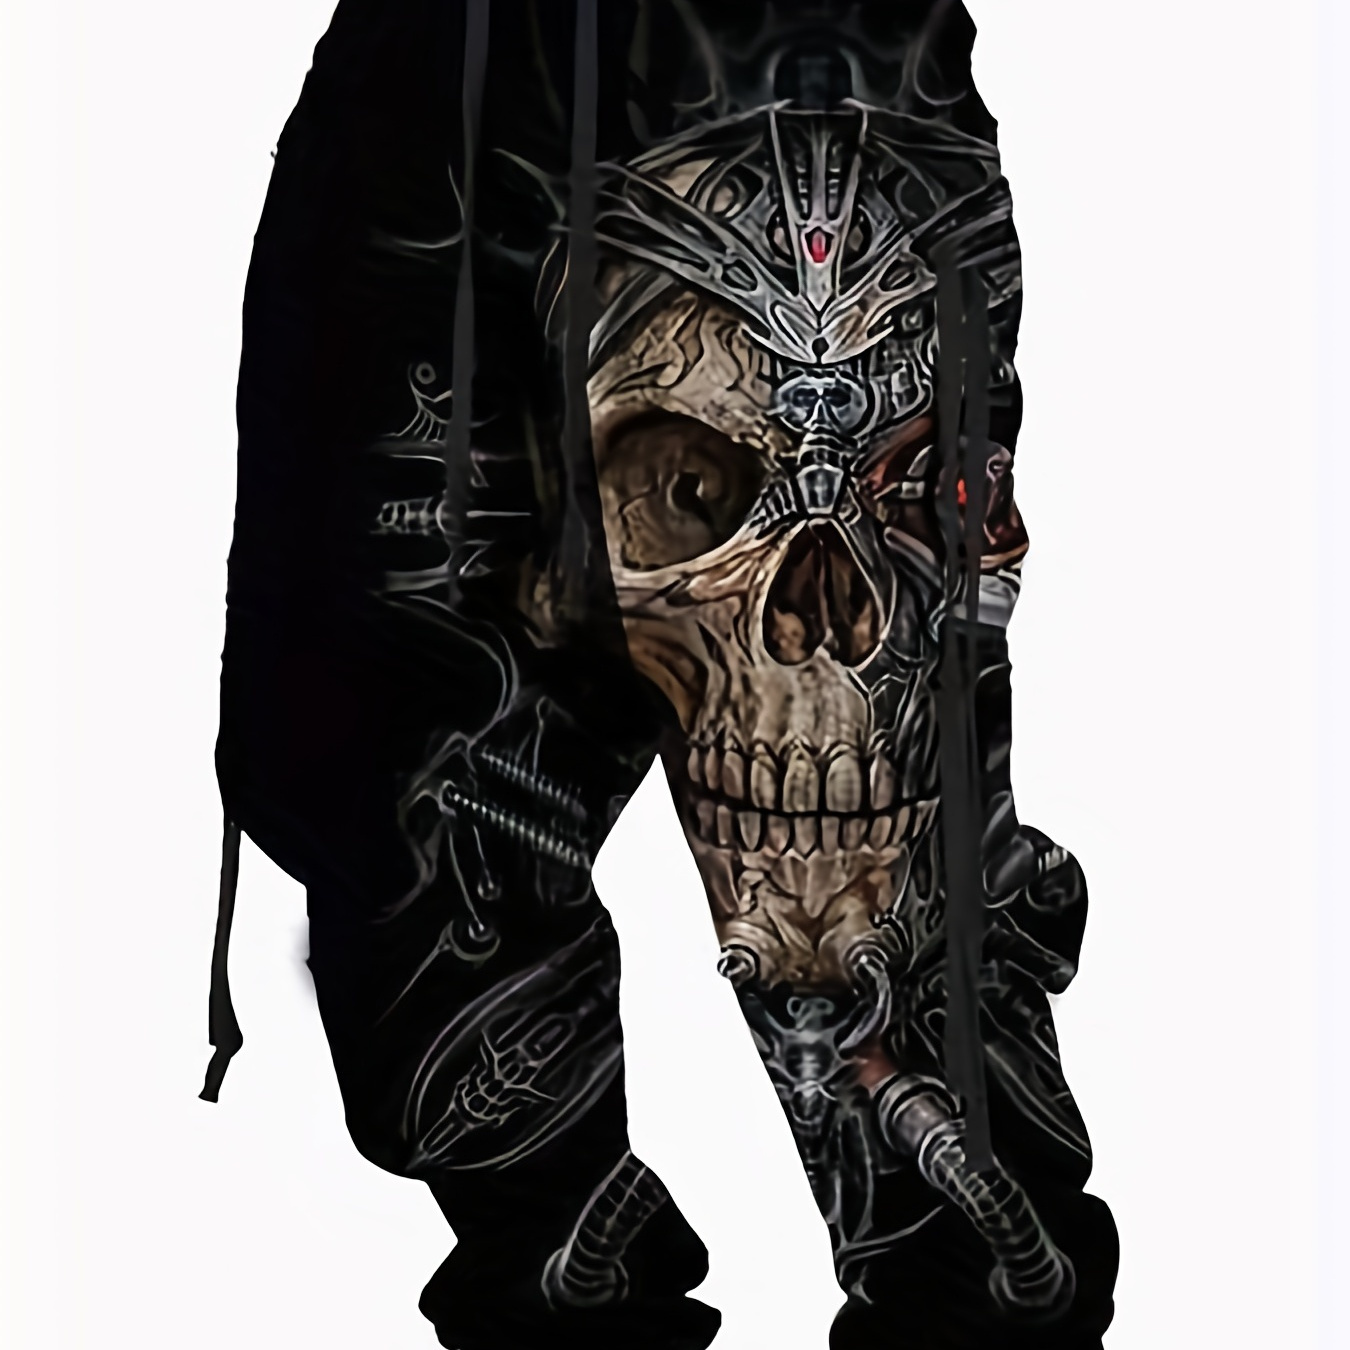 

Halloween Skull Print, Men's Drawstring Sweatpants, Casual Comfy Jogger Pants, Men’s Clothing